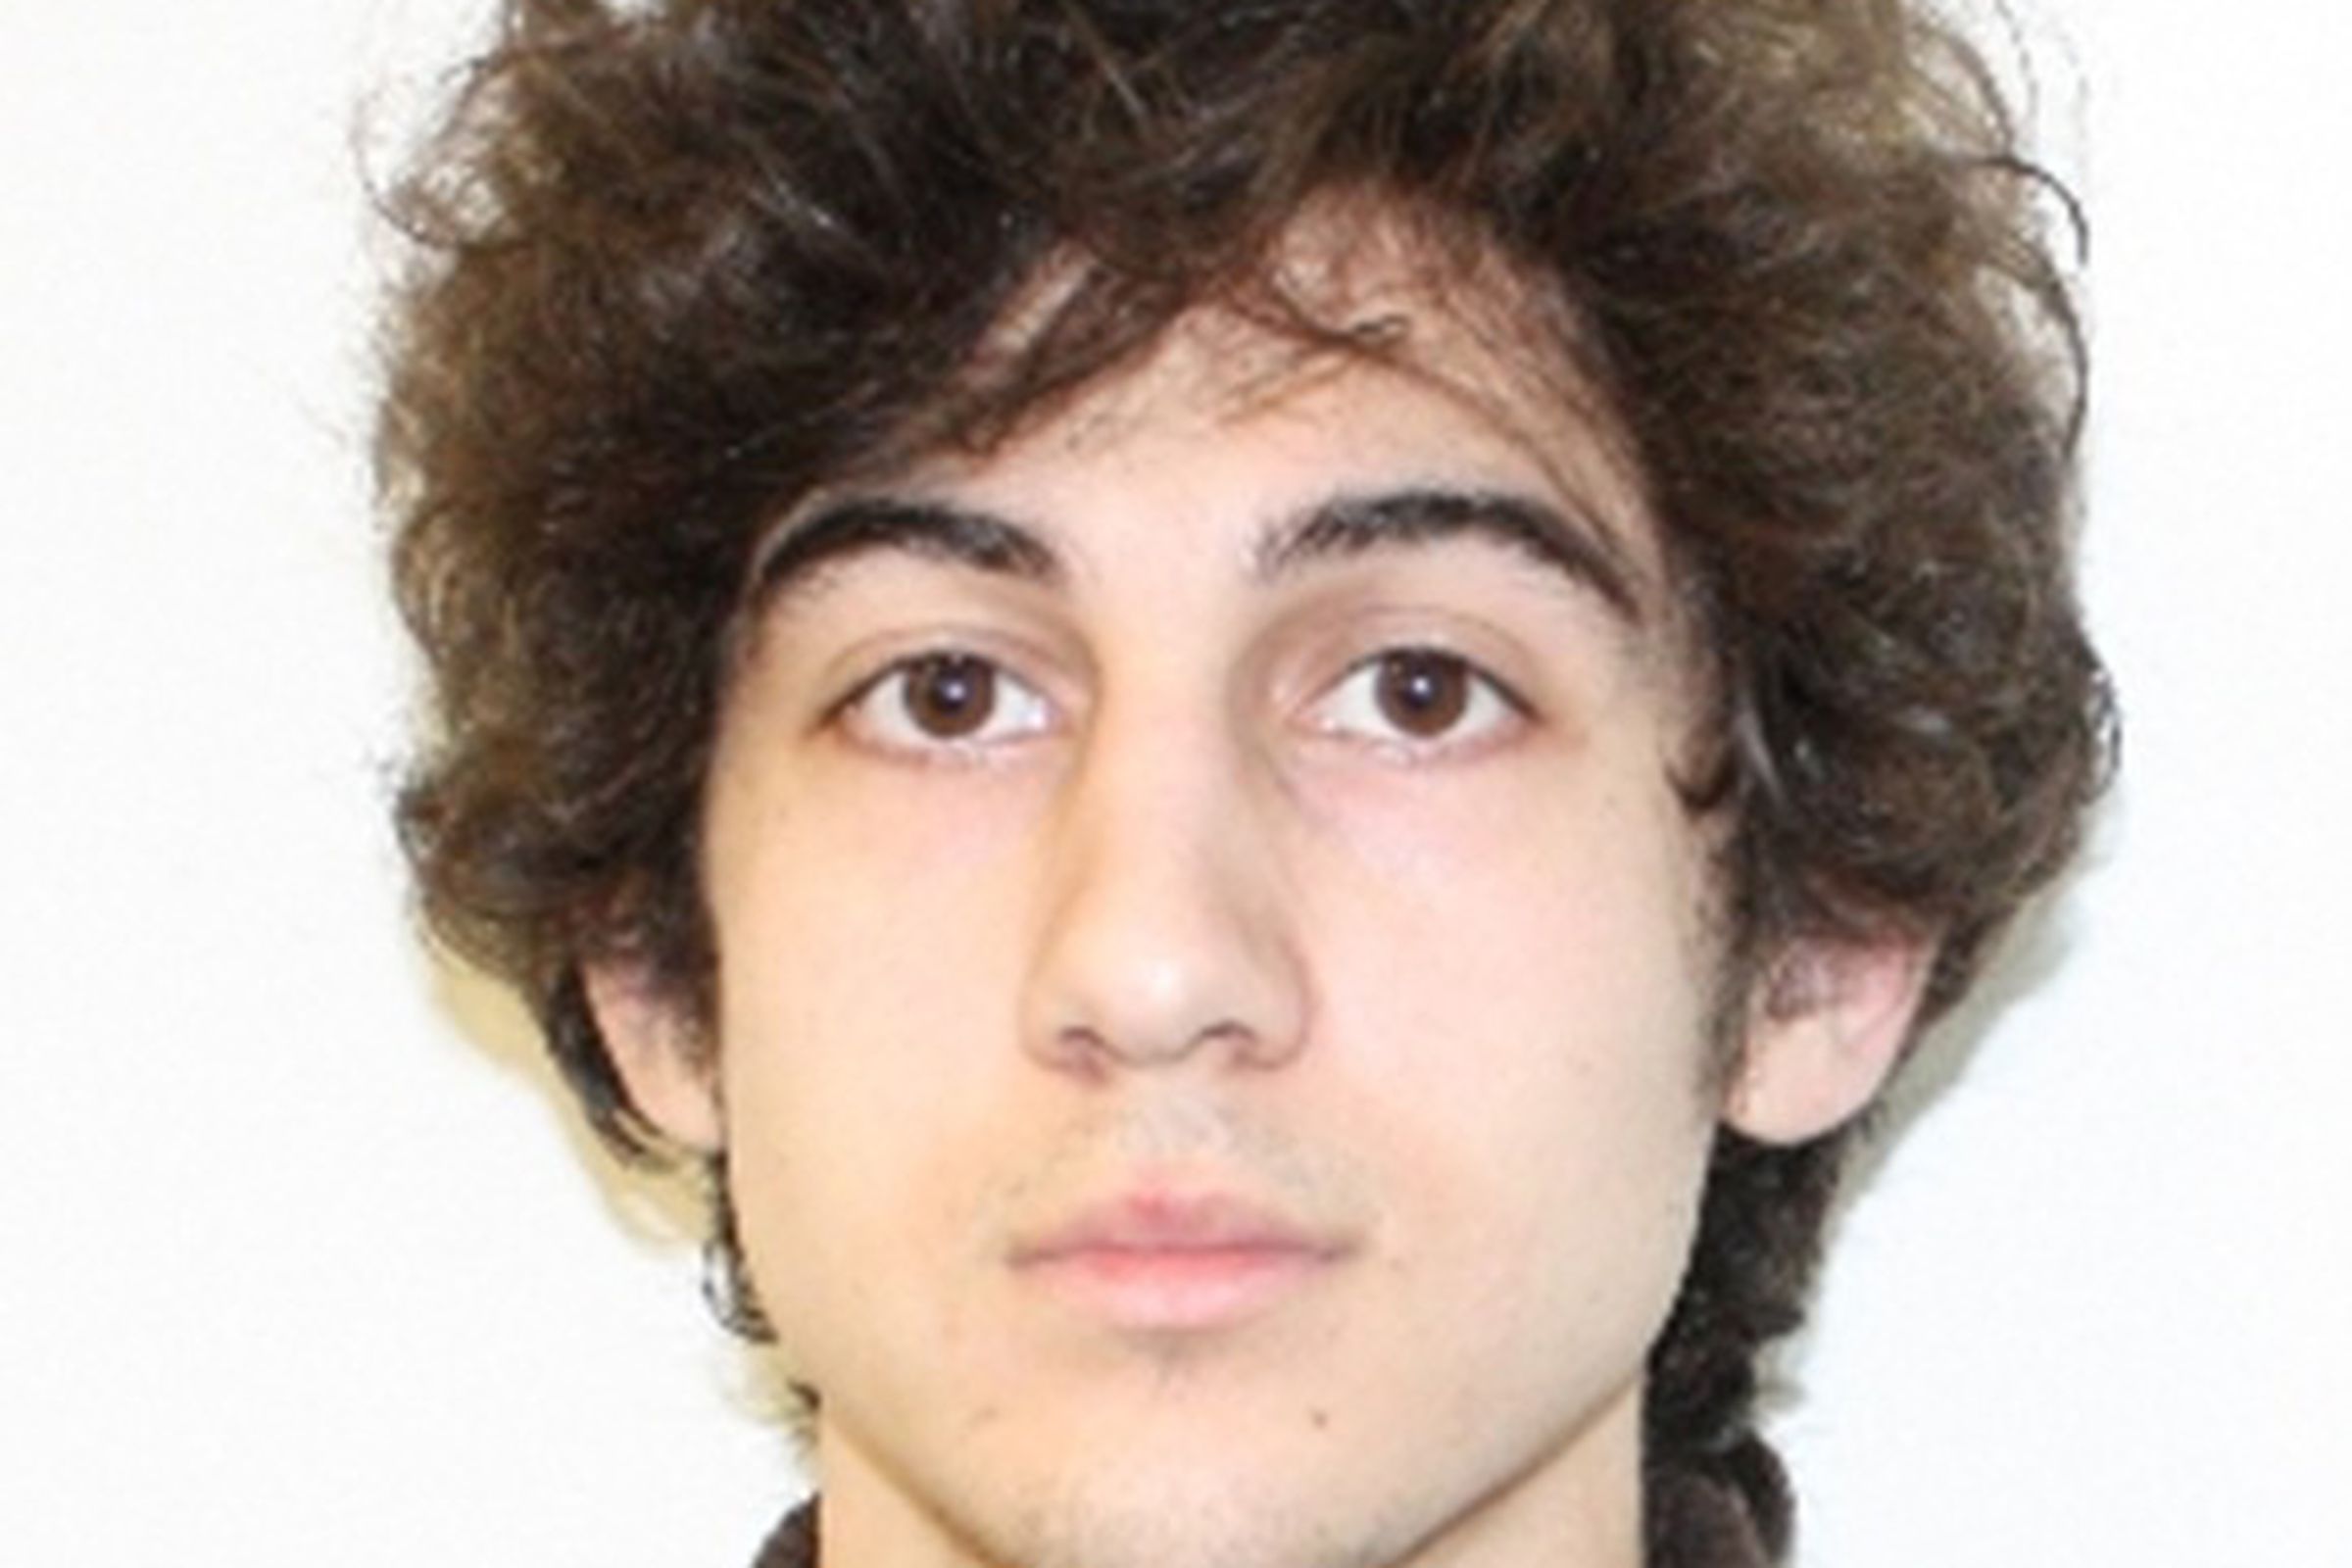 Dzhokhar Tsarnaev cropped FBI mugshot